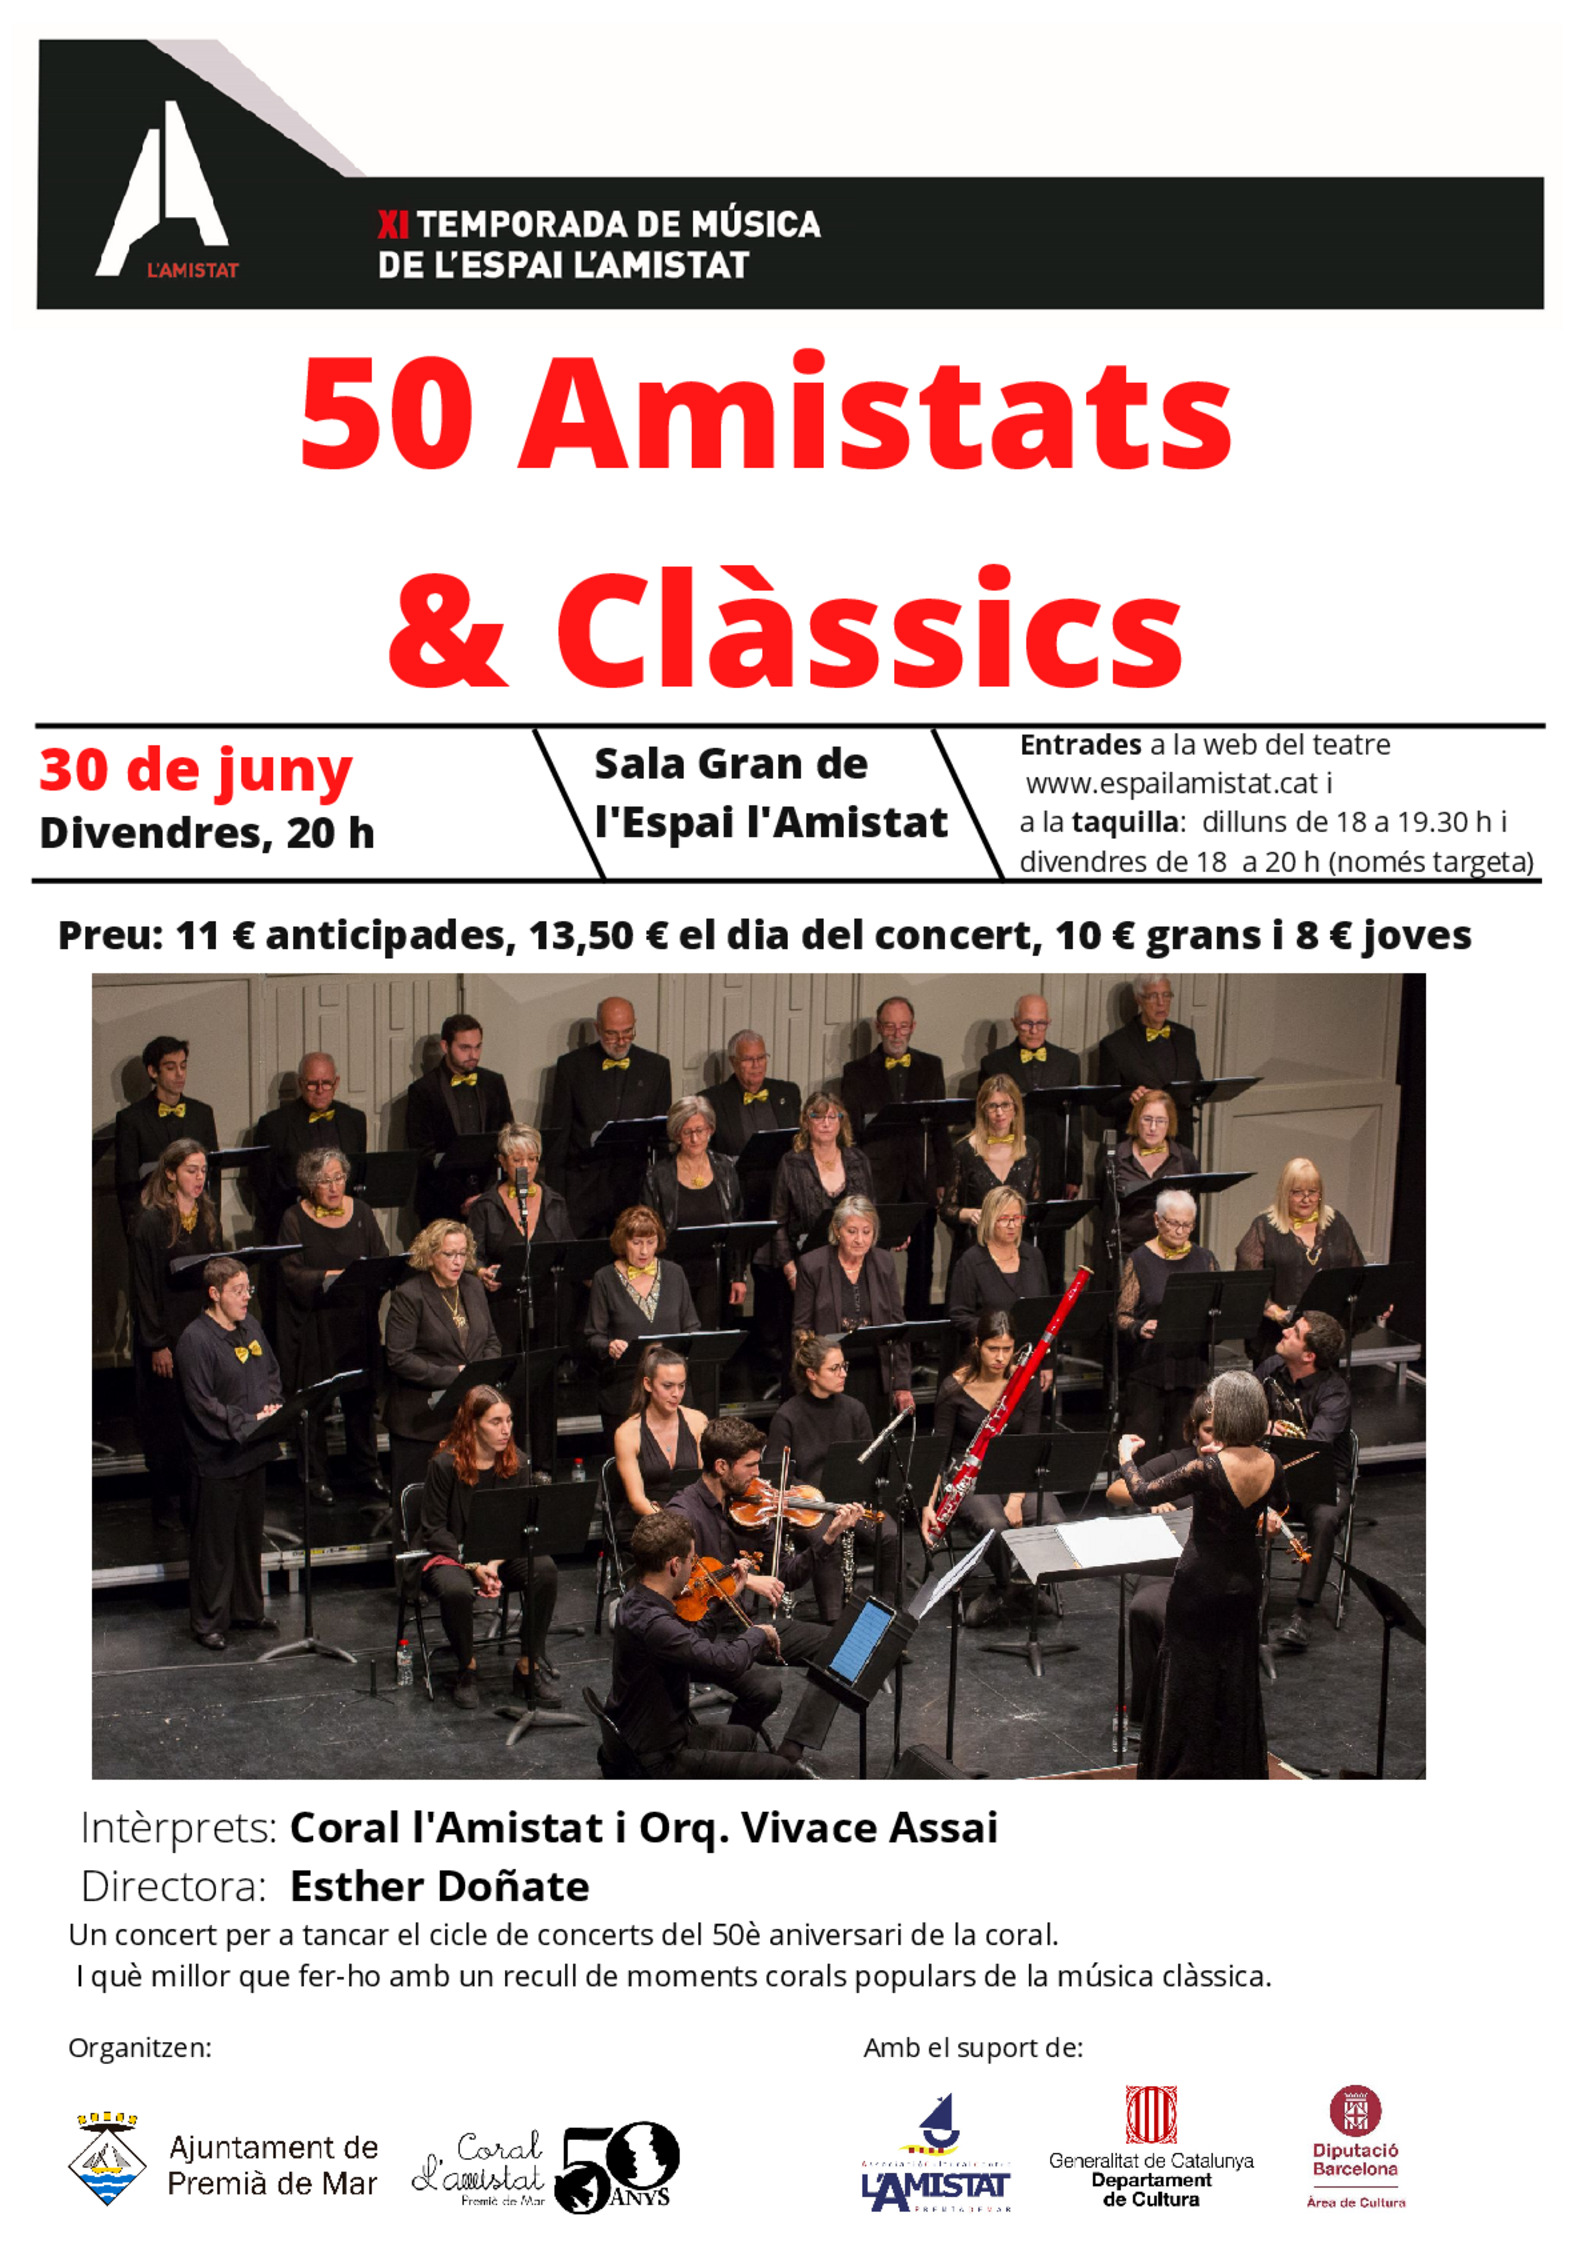 50 Amistats & Clssics